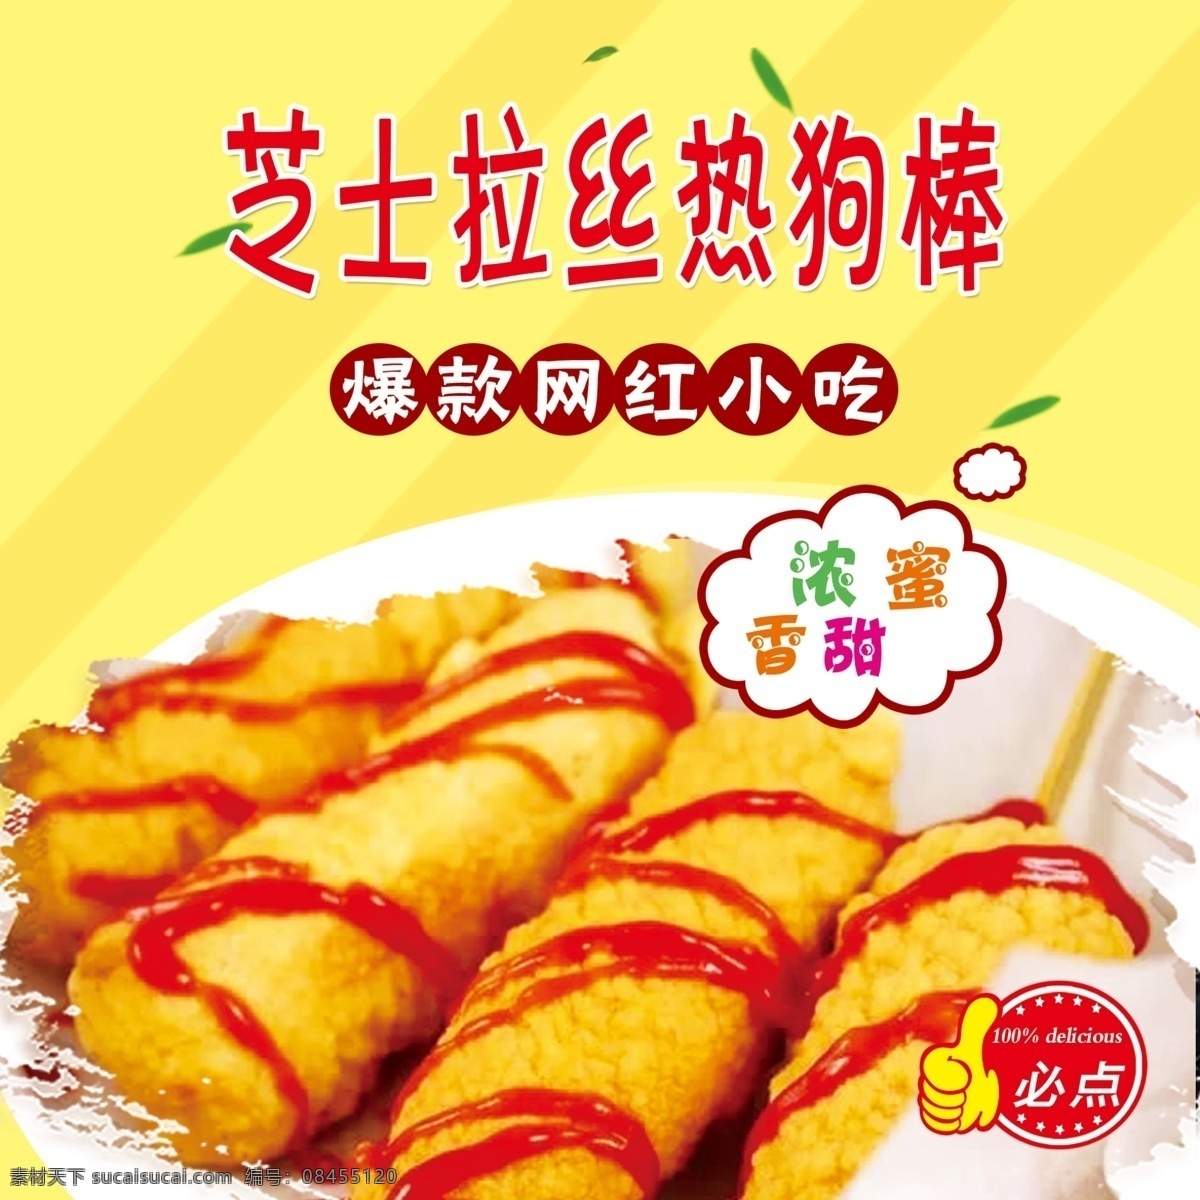 芝士 拉丝 热狗 棒 食品海报 食品菜牌 黄色 小清新 芝士热狗棒 网红小吃